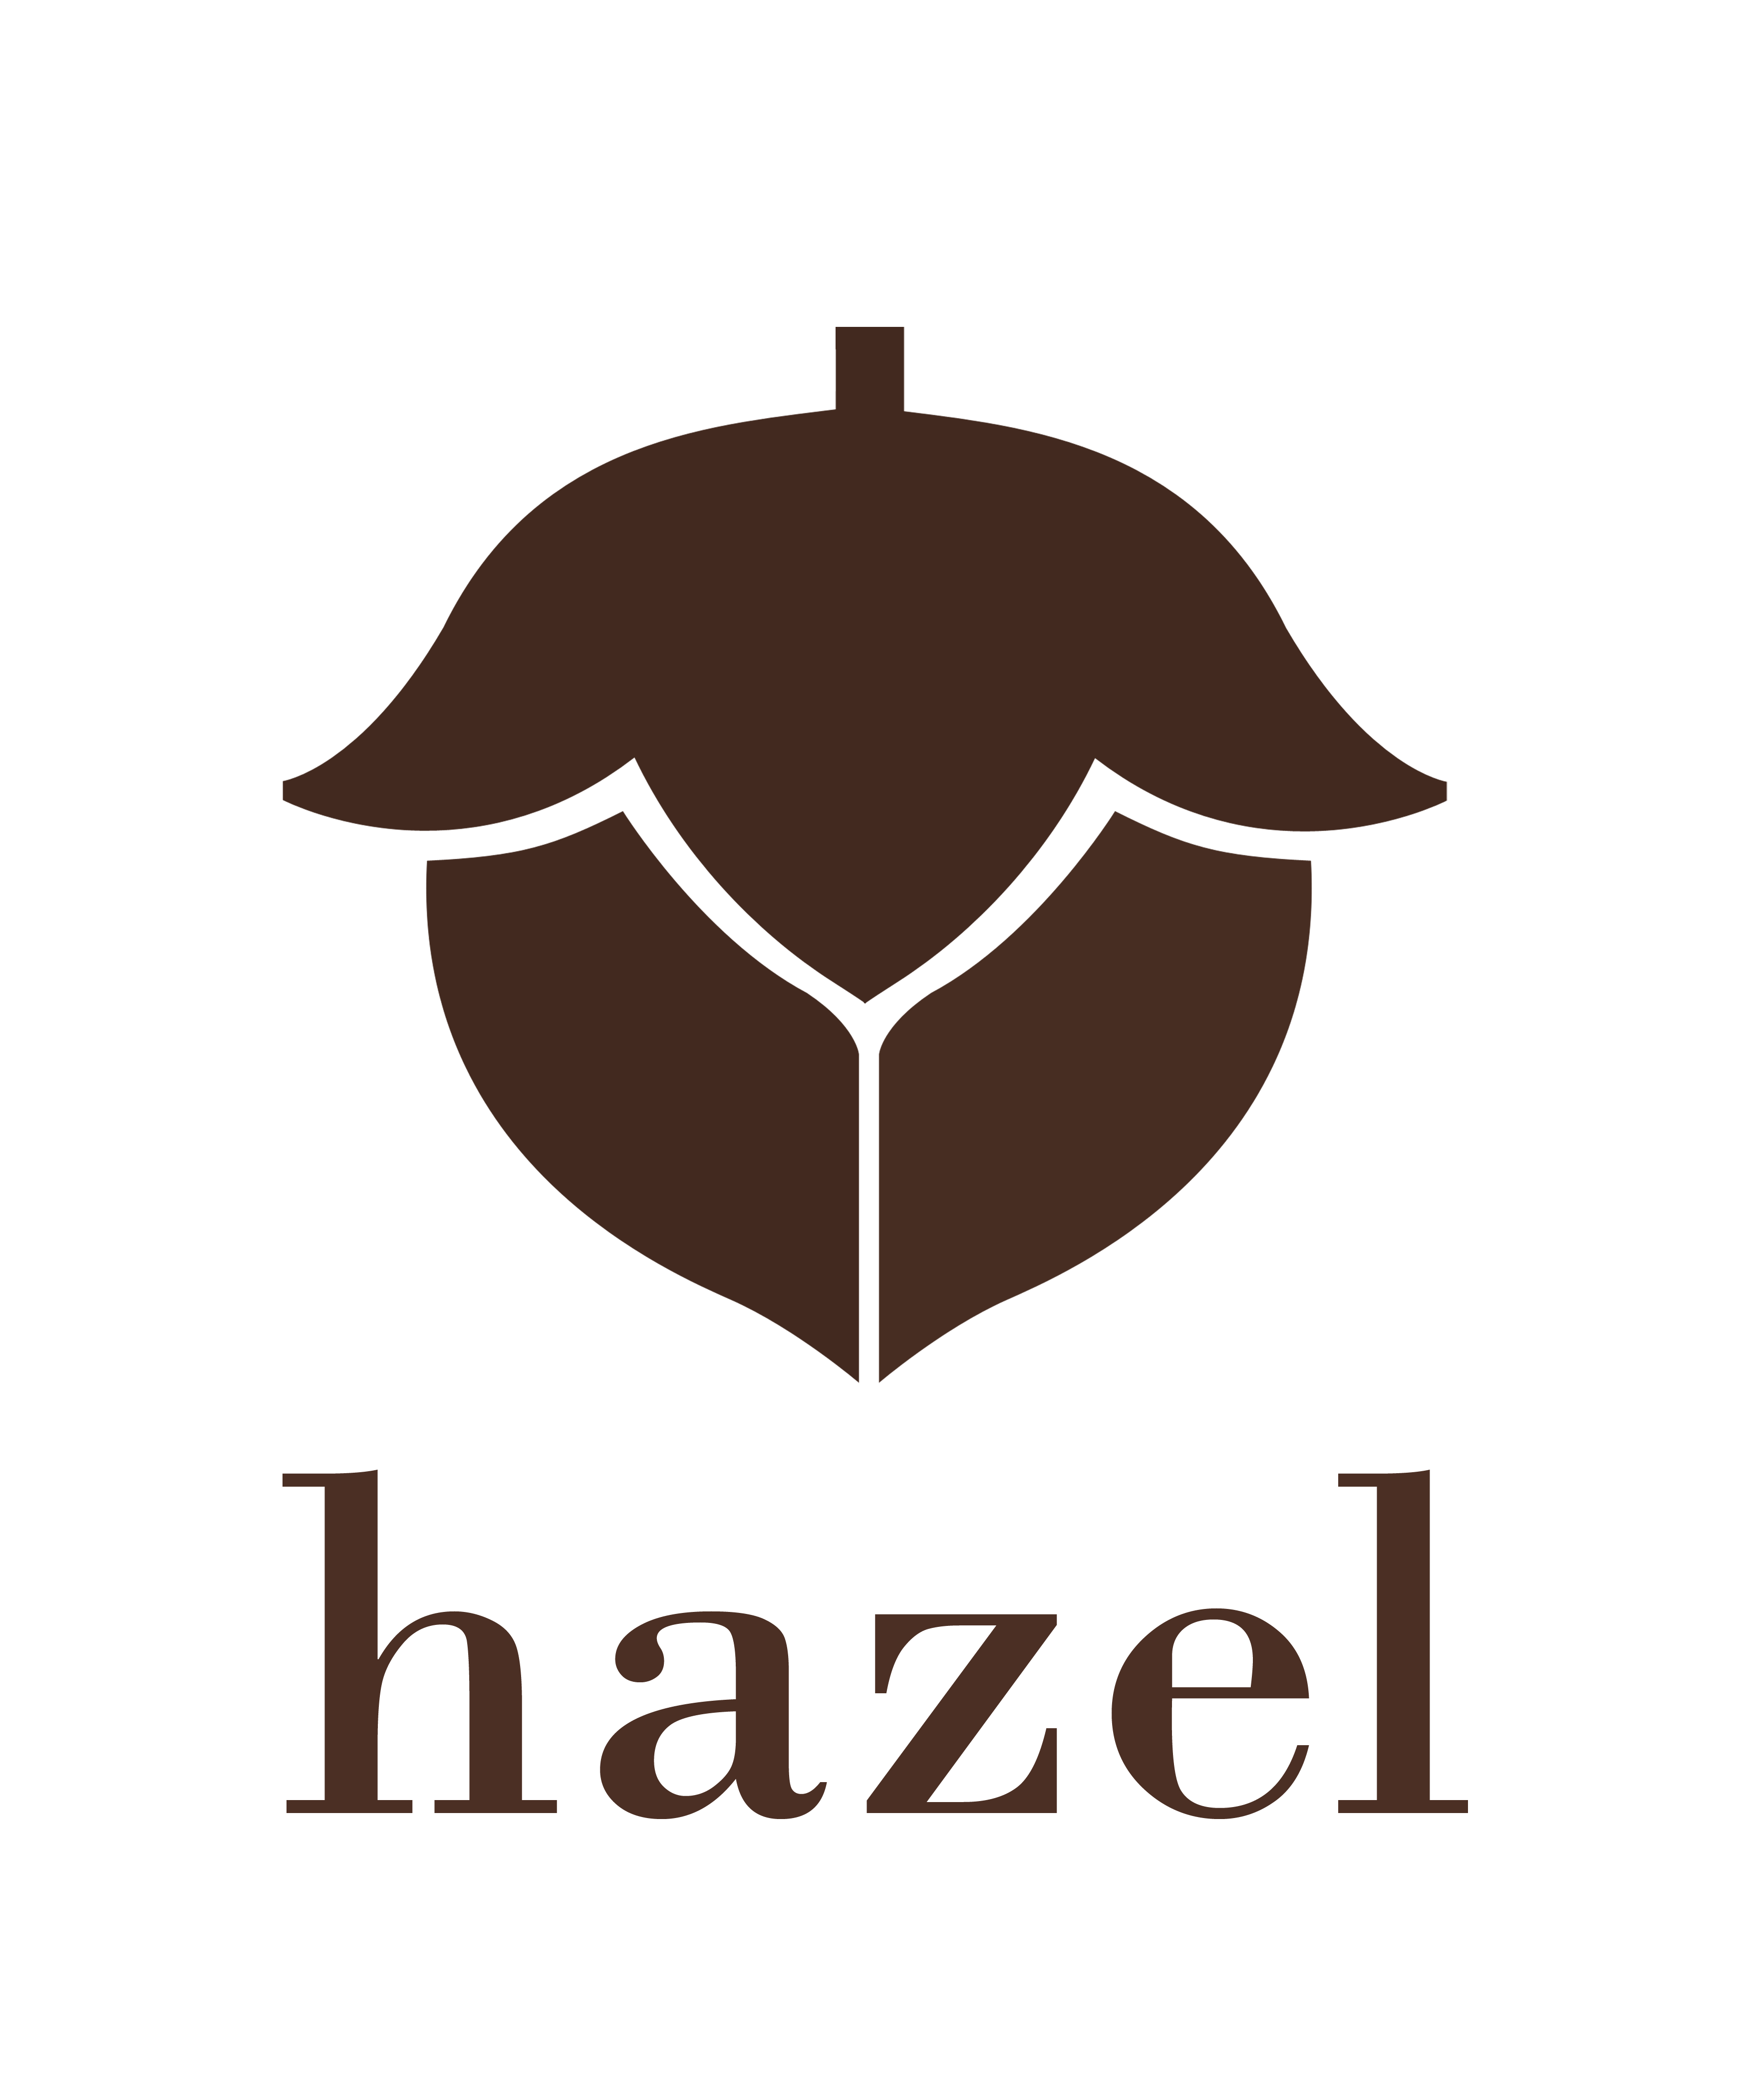 Hazel